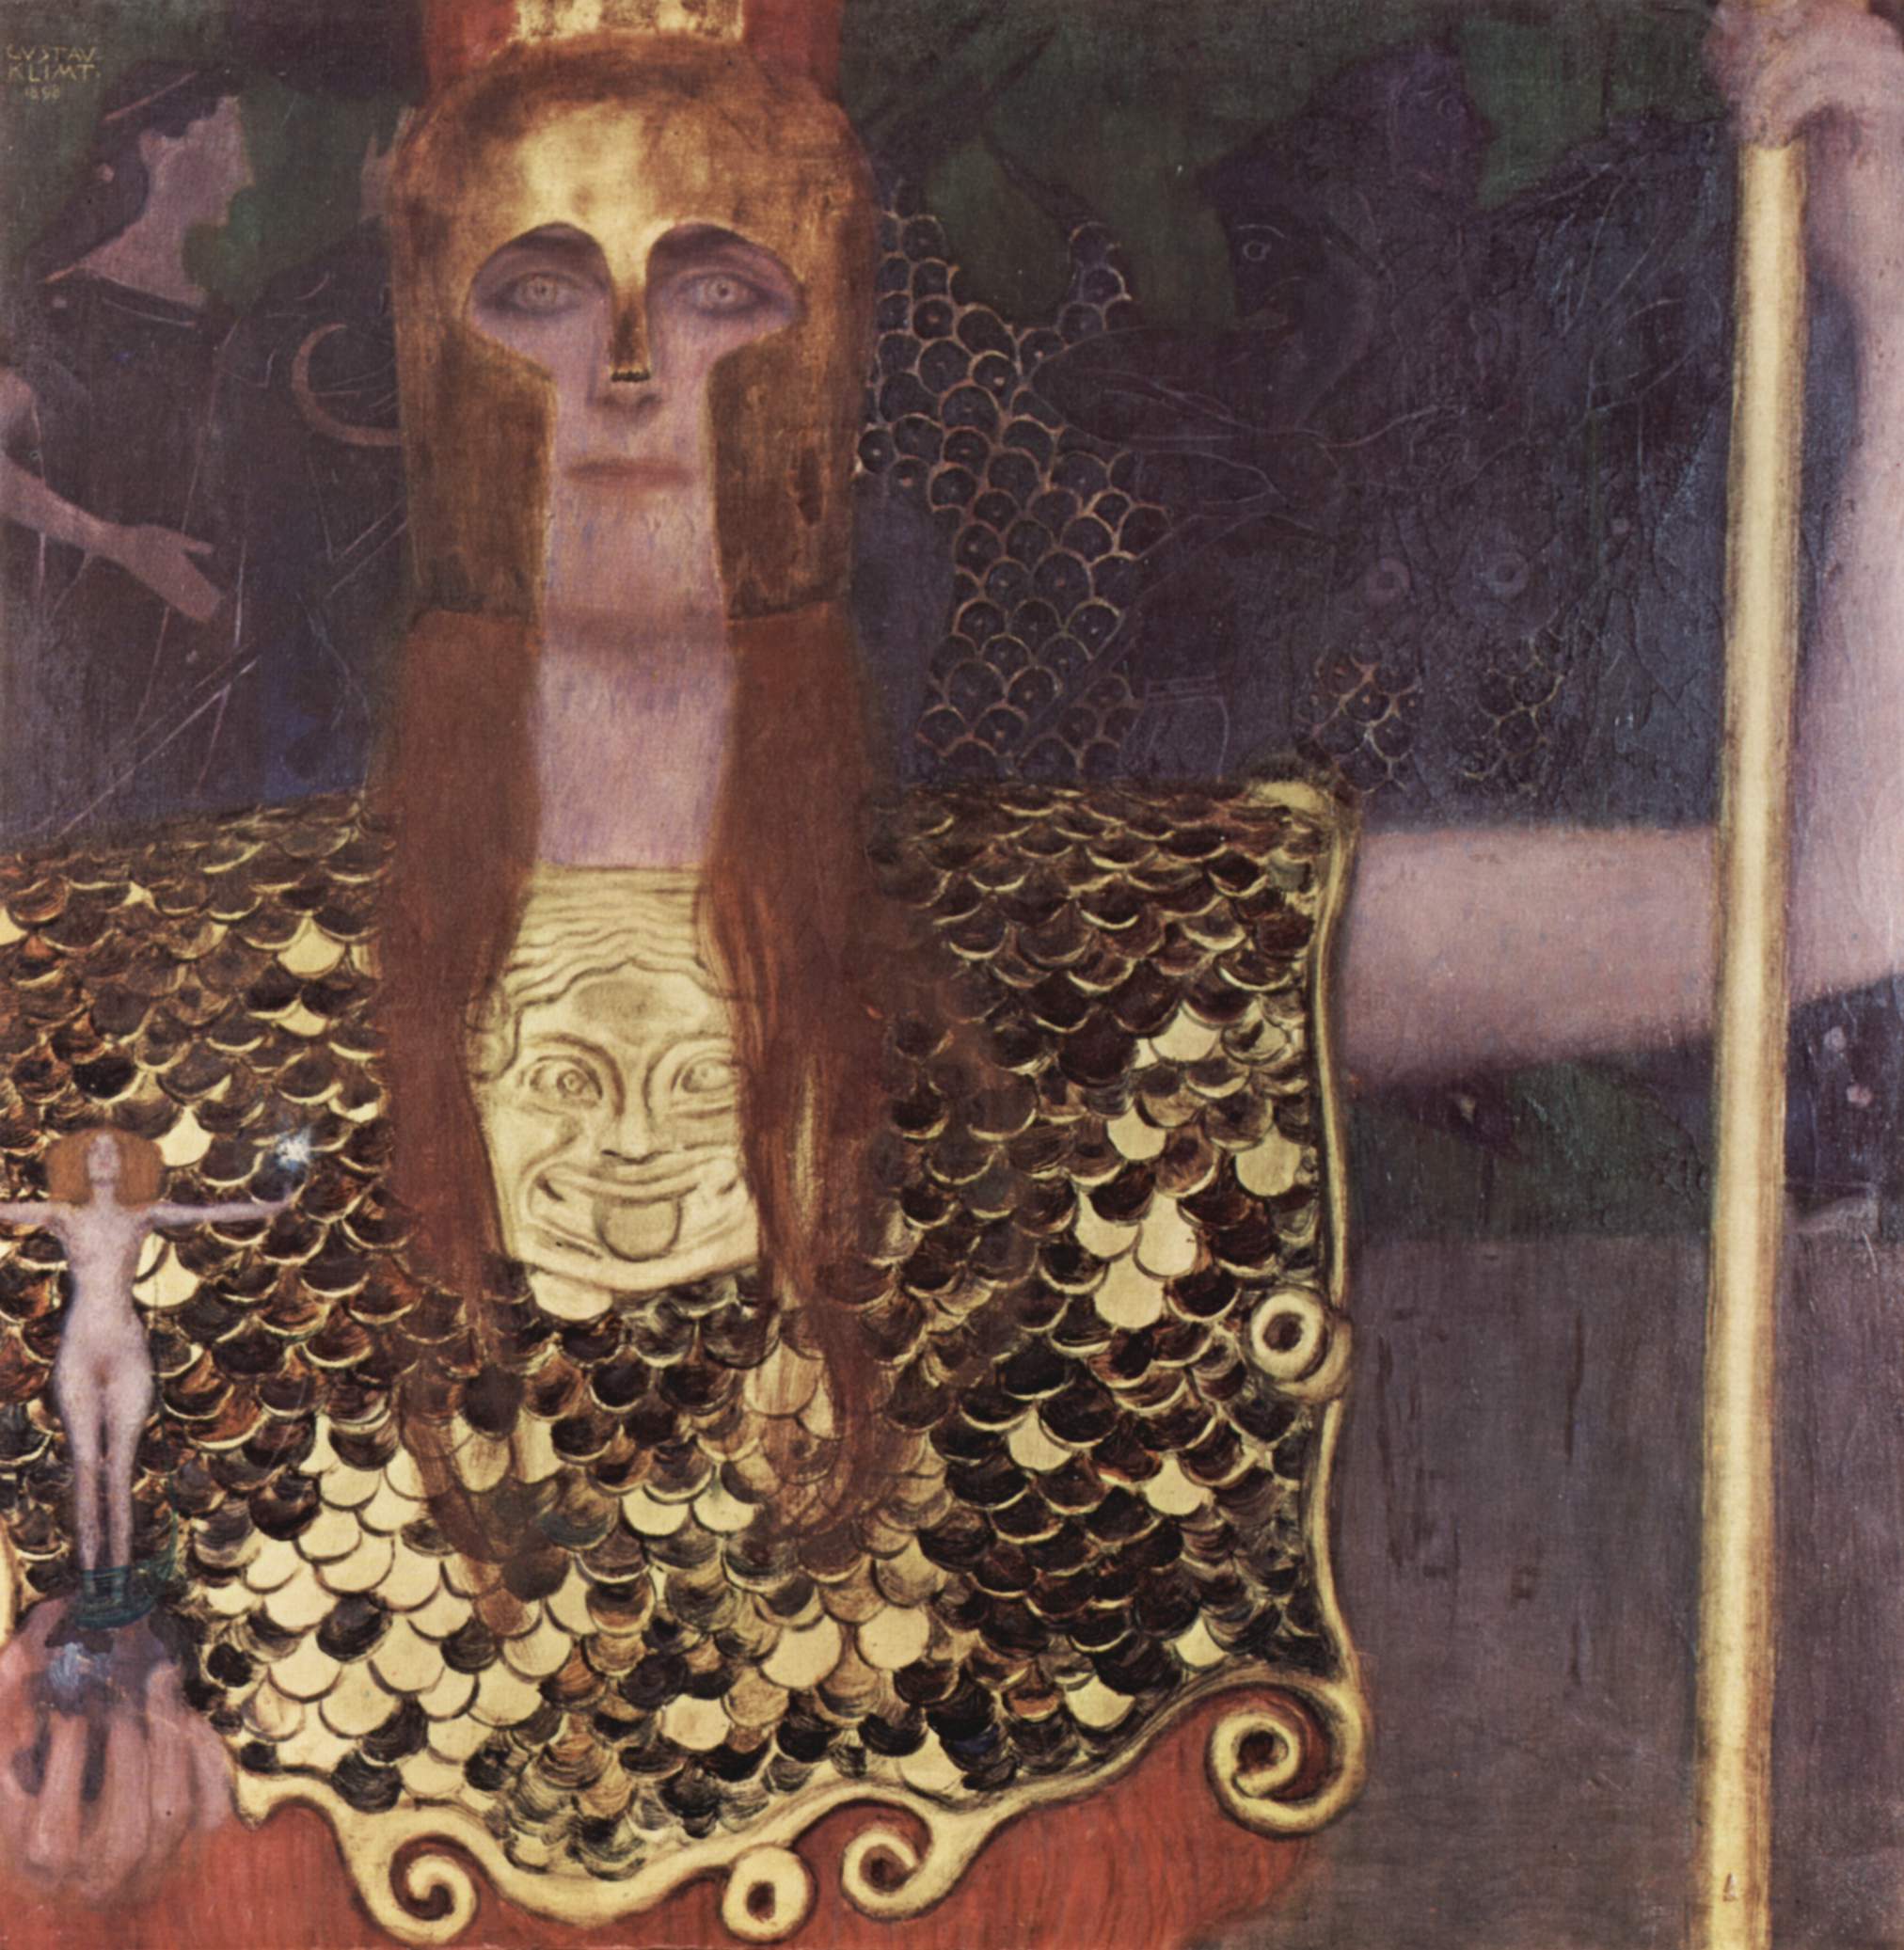 帕拉斯·雅典娜 by 古斯塔夫 克林姆特 - 1898 - 75 × 75 厘米 